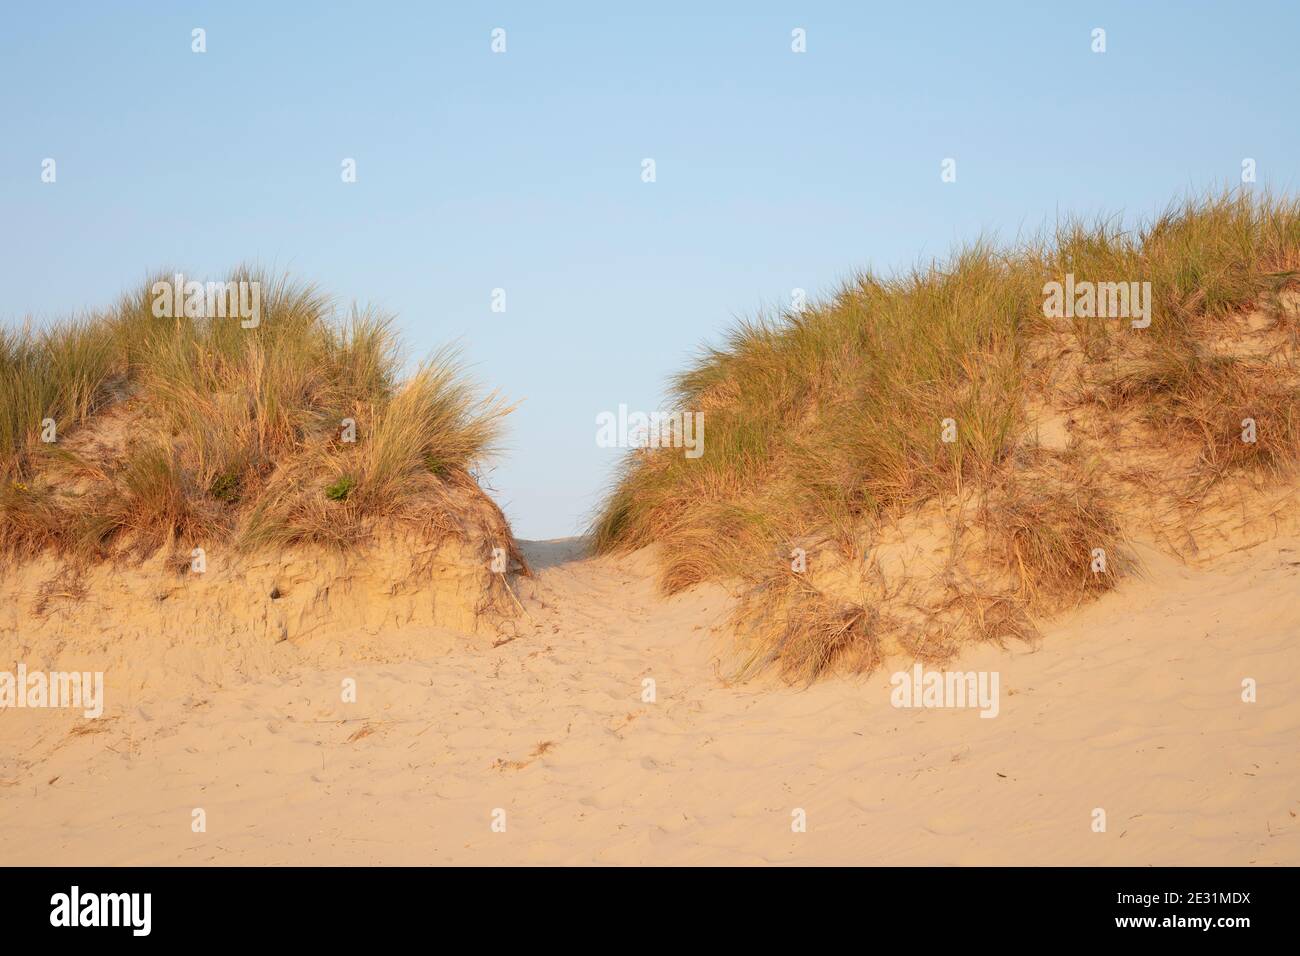 Dune landscape at the Nationalpark Wadden sea, Borkum, East Frisian Island, East frisia, Lower Saxony, Germany, Europe Stock Photo